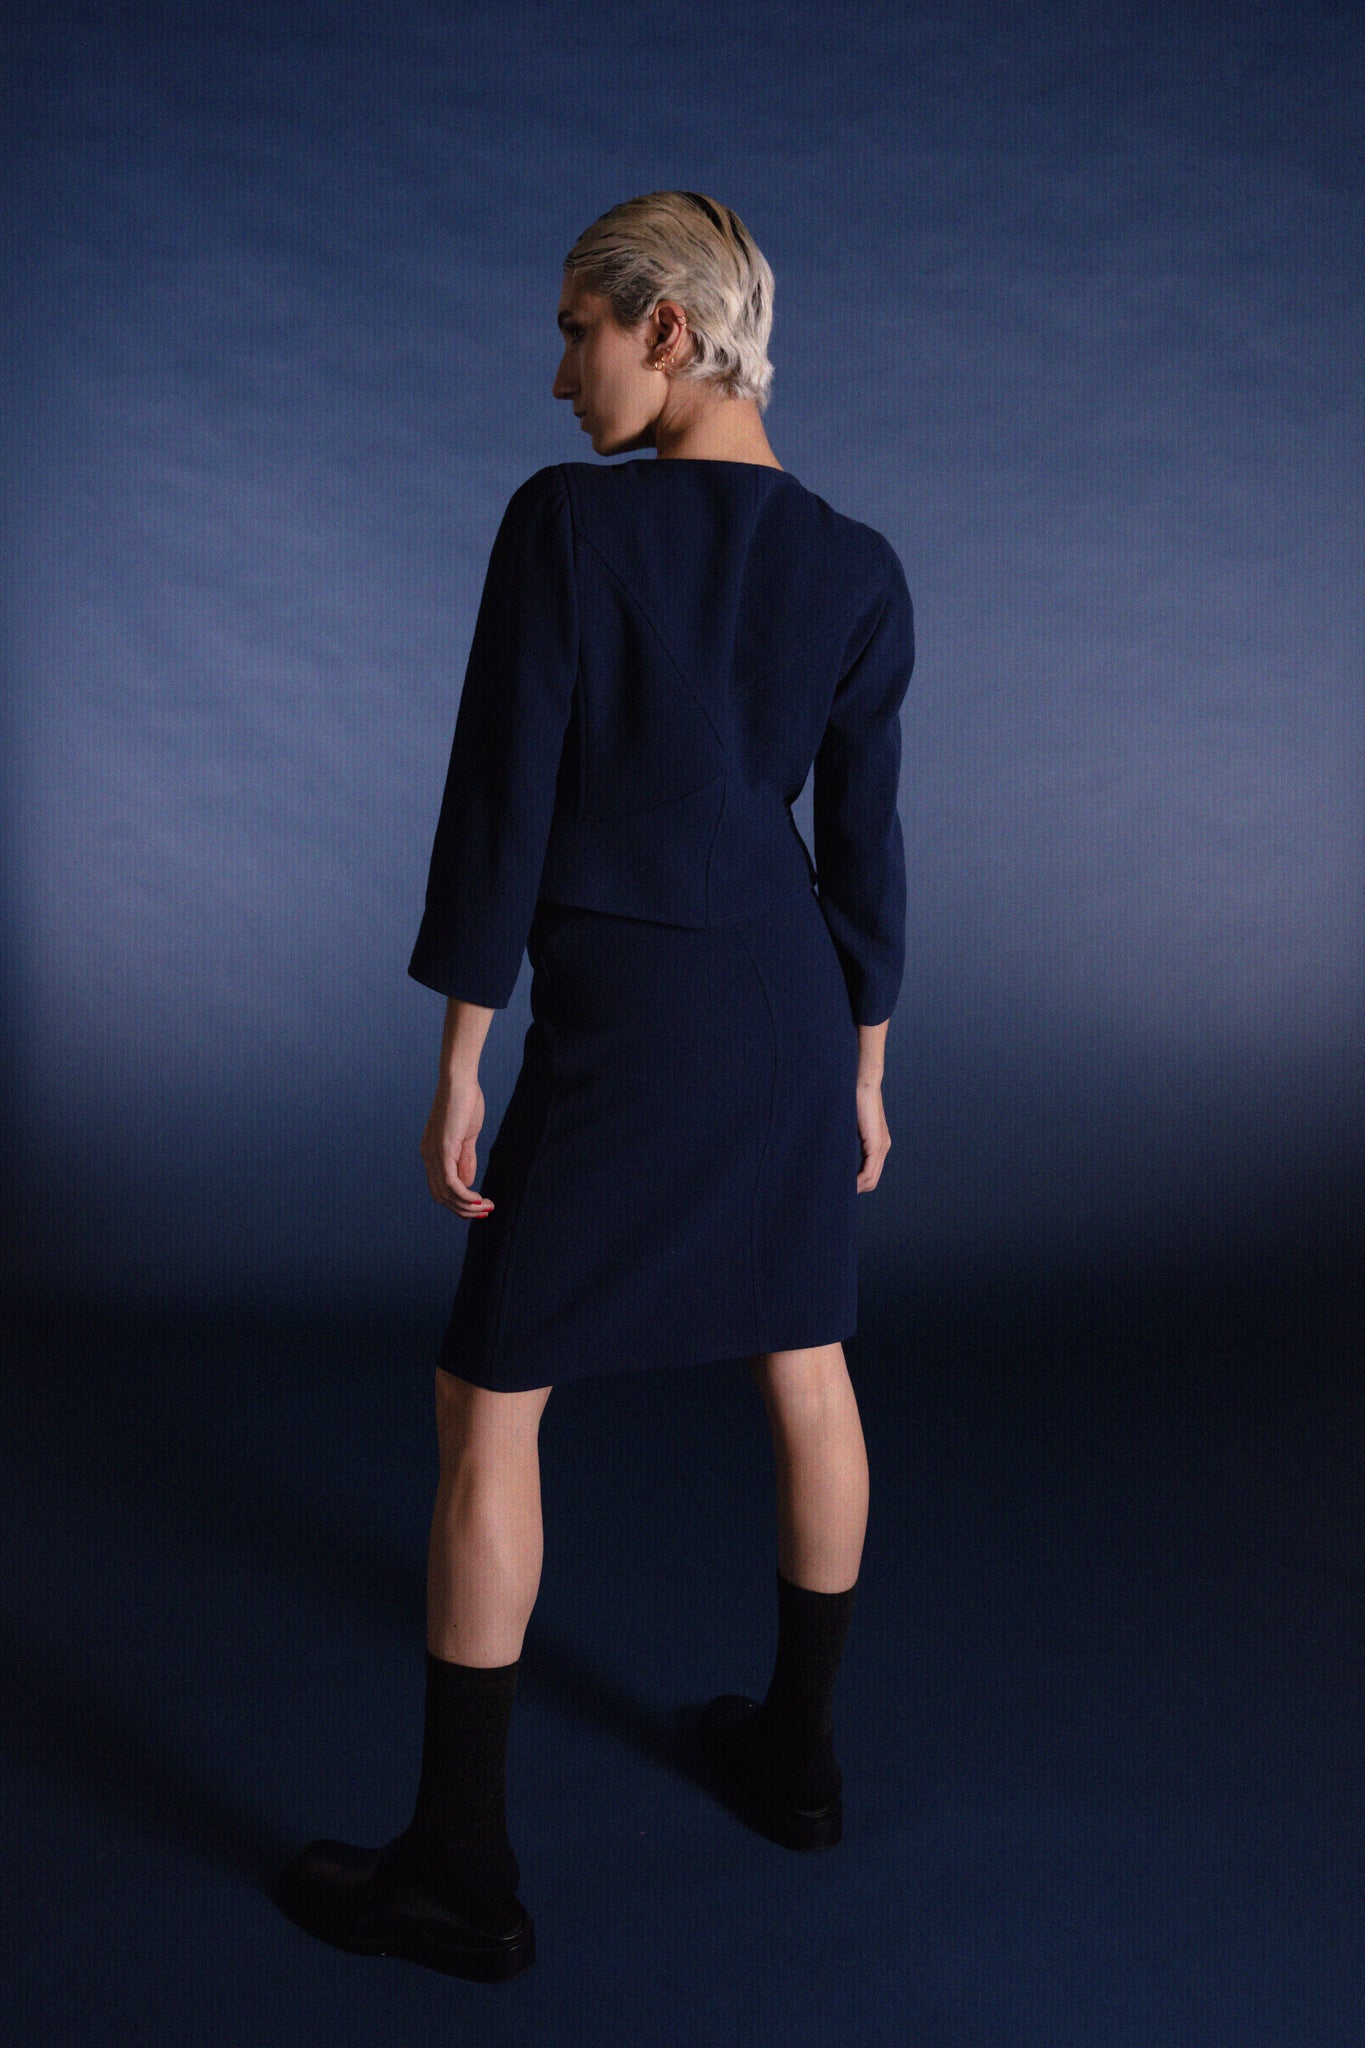 courrèges navy skirt suit vintage studio photography short blond hair